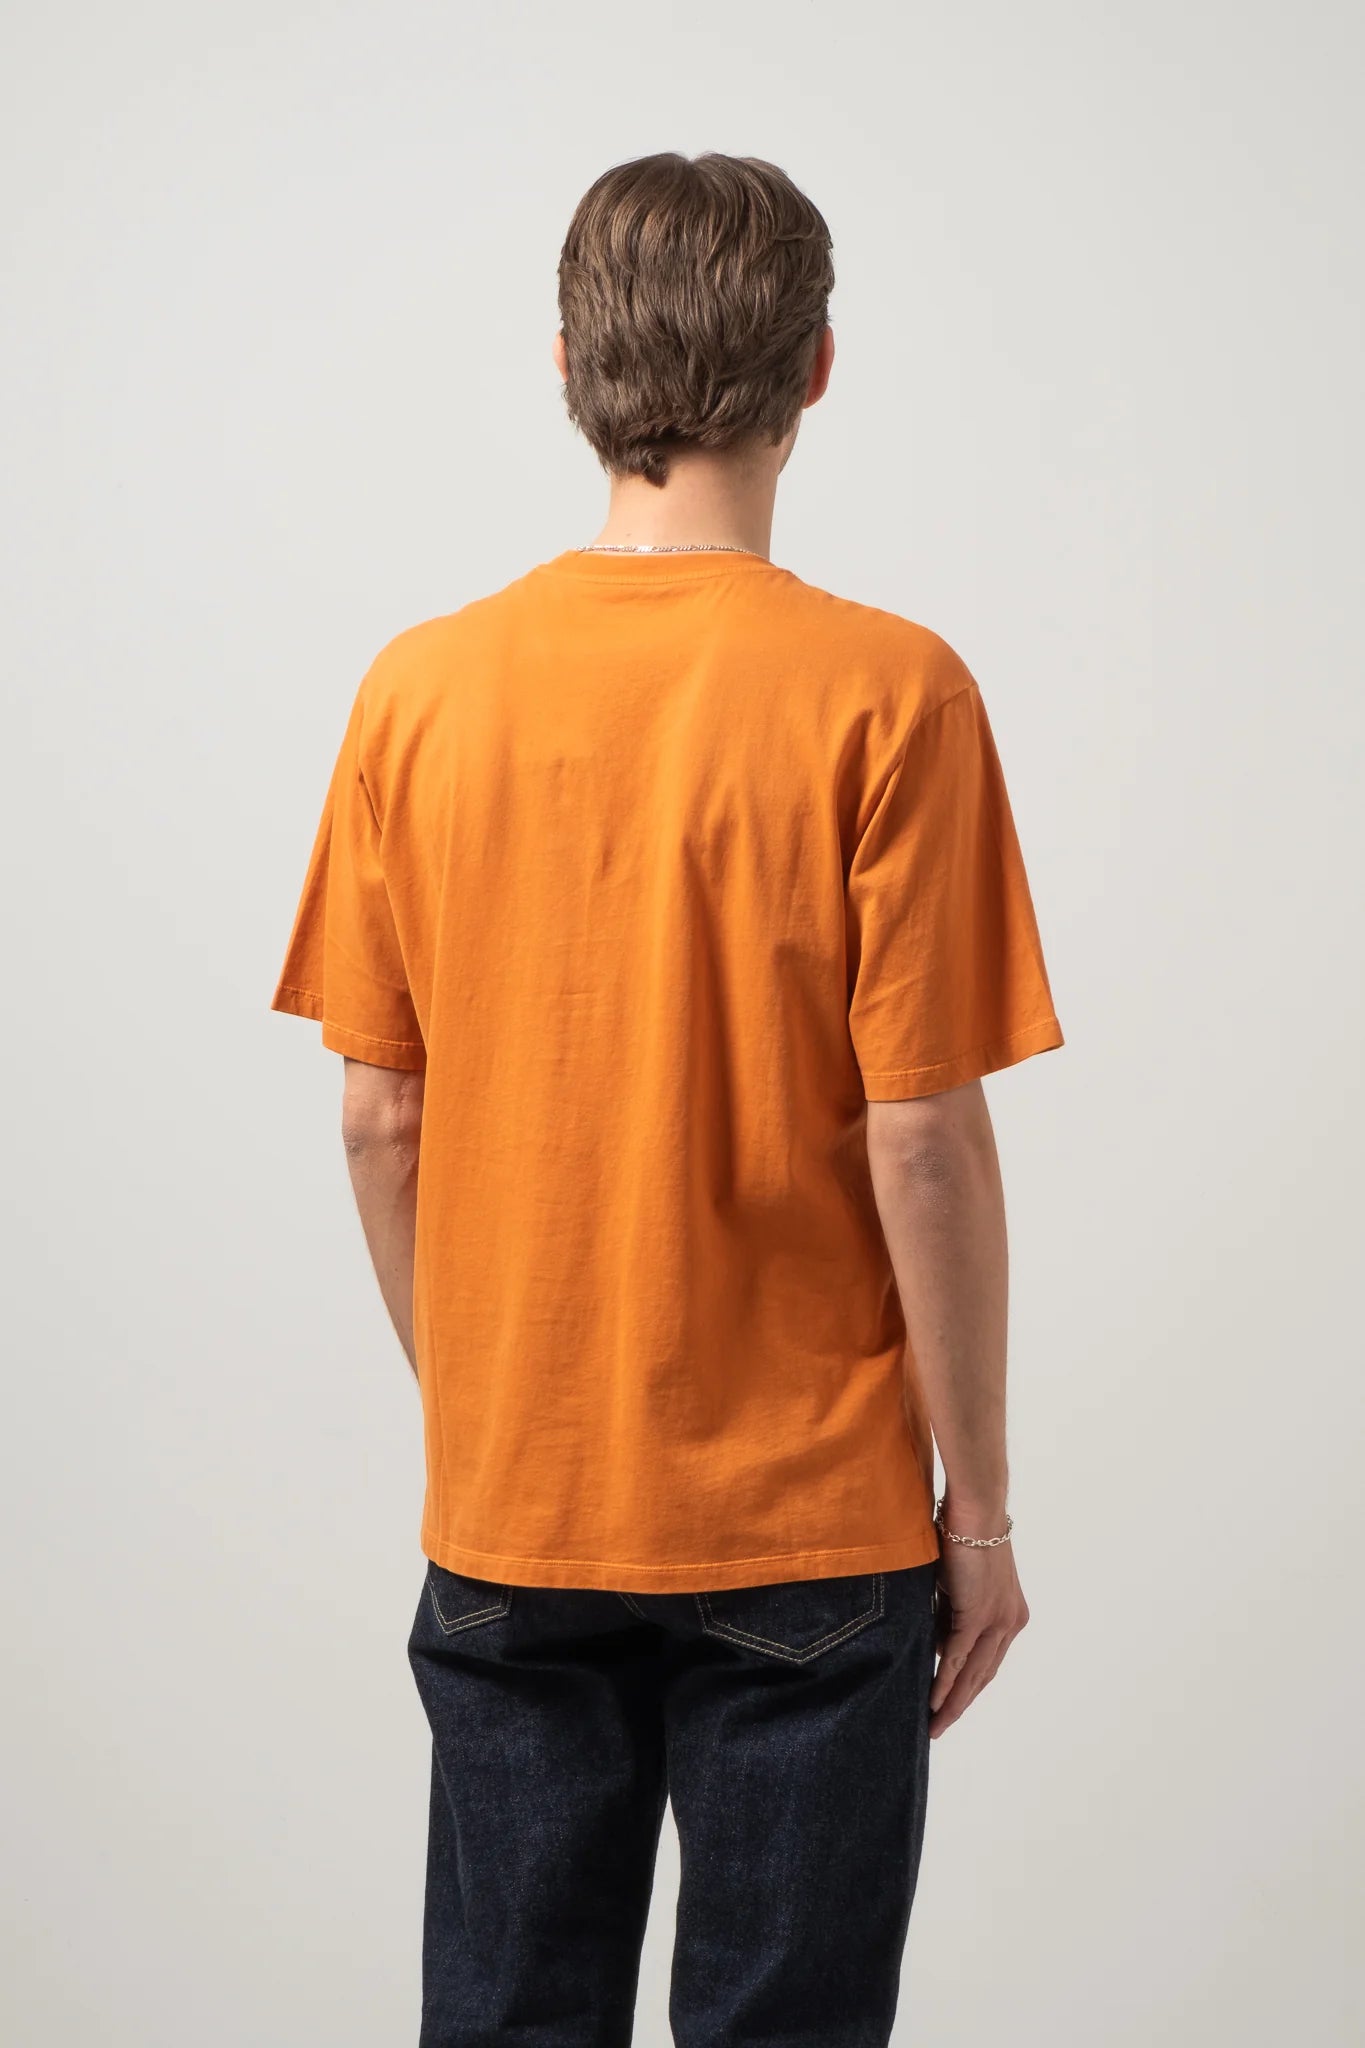 C.O.F. Studio Crewneck T-Shirt in orange